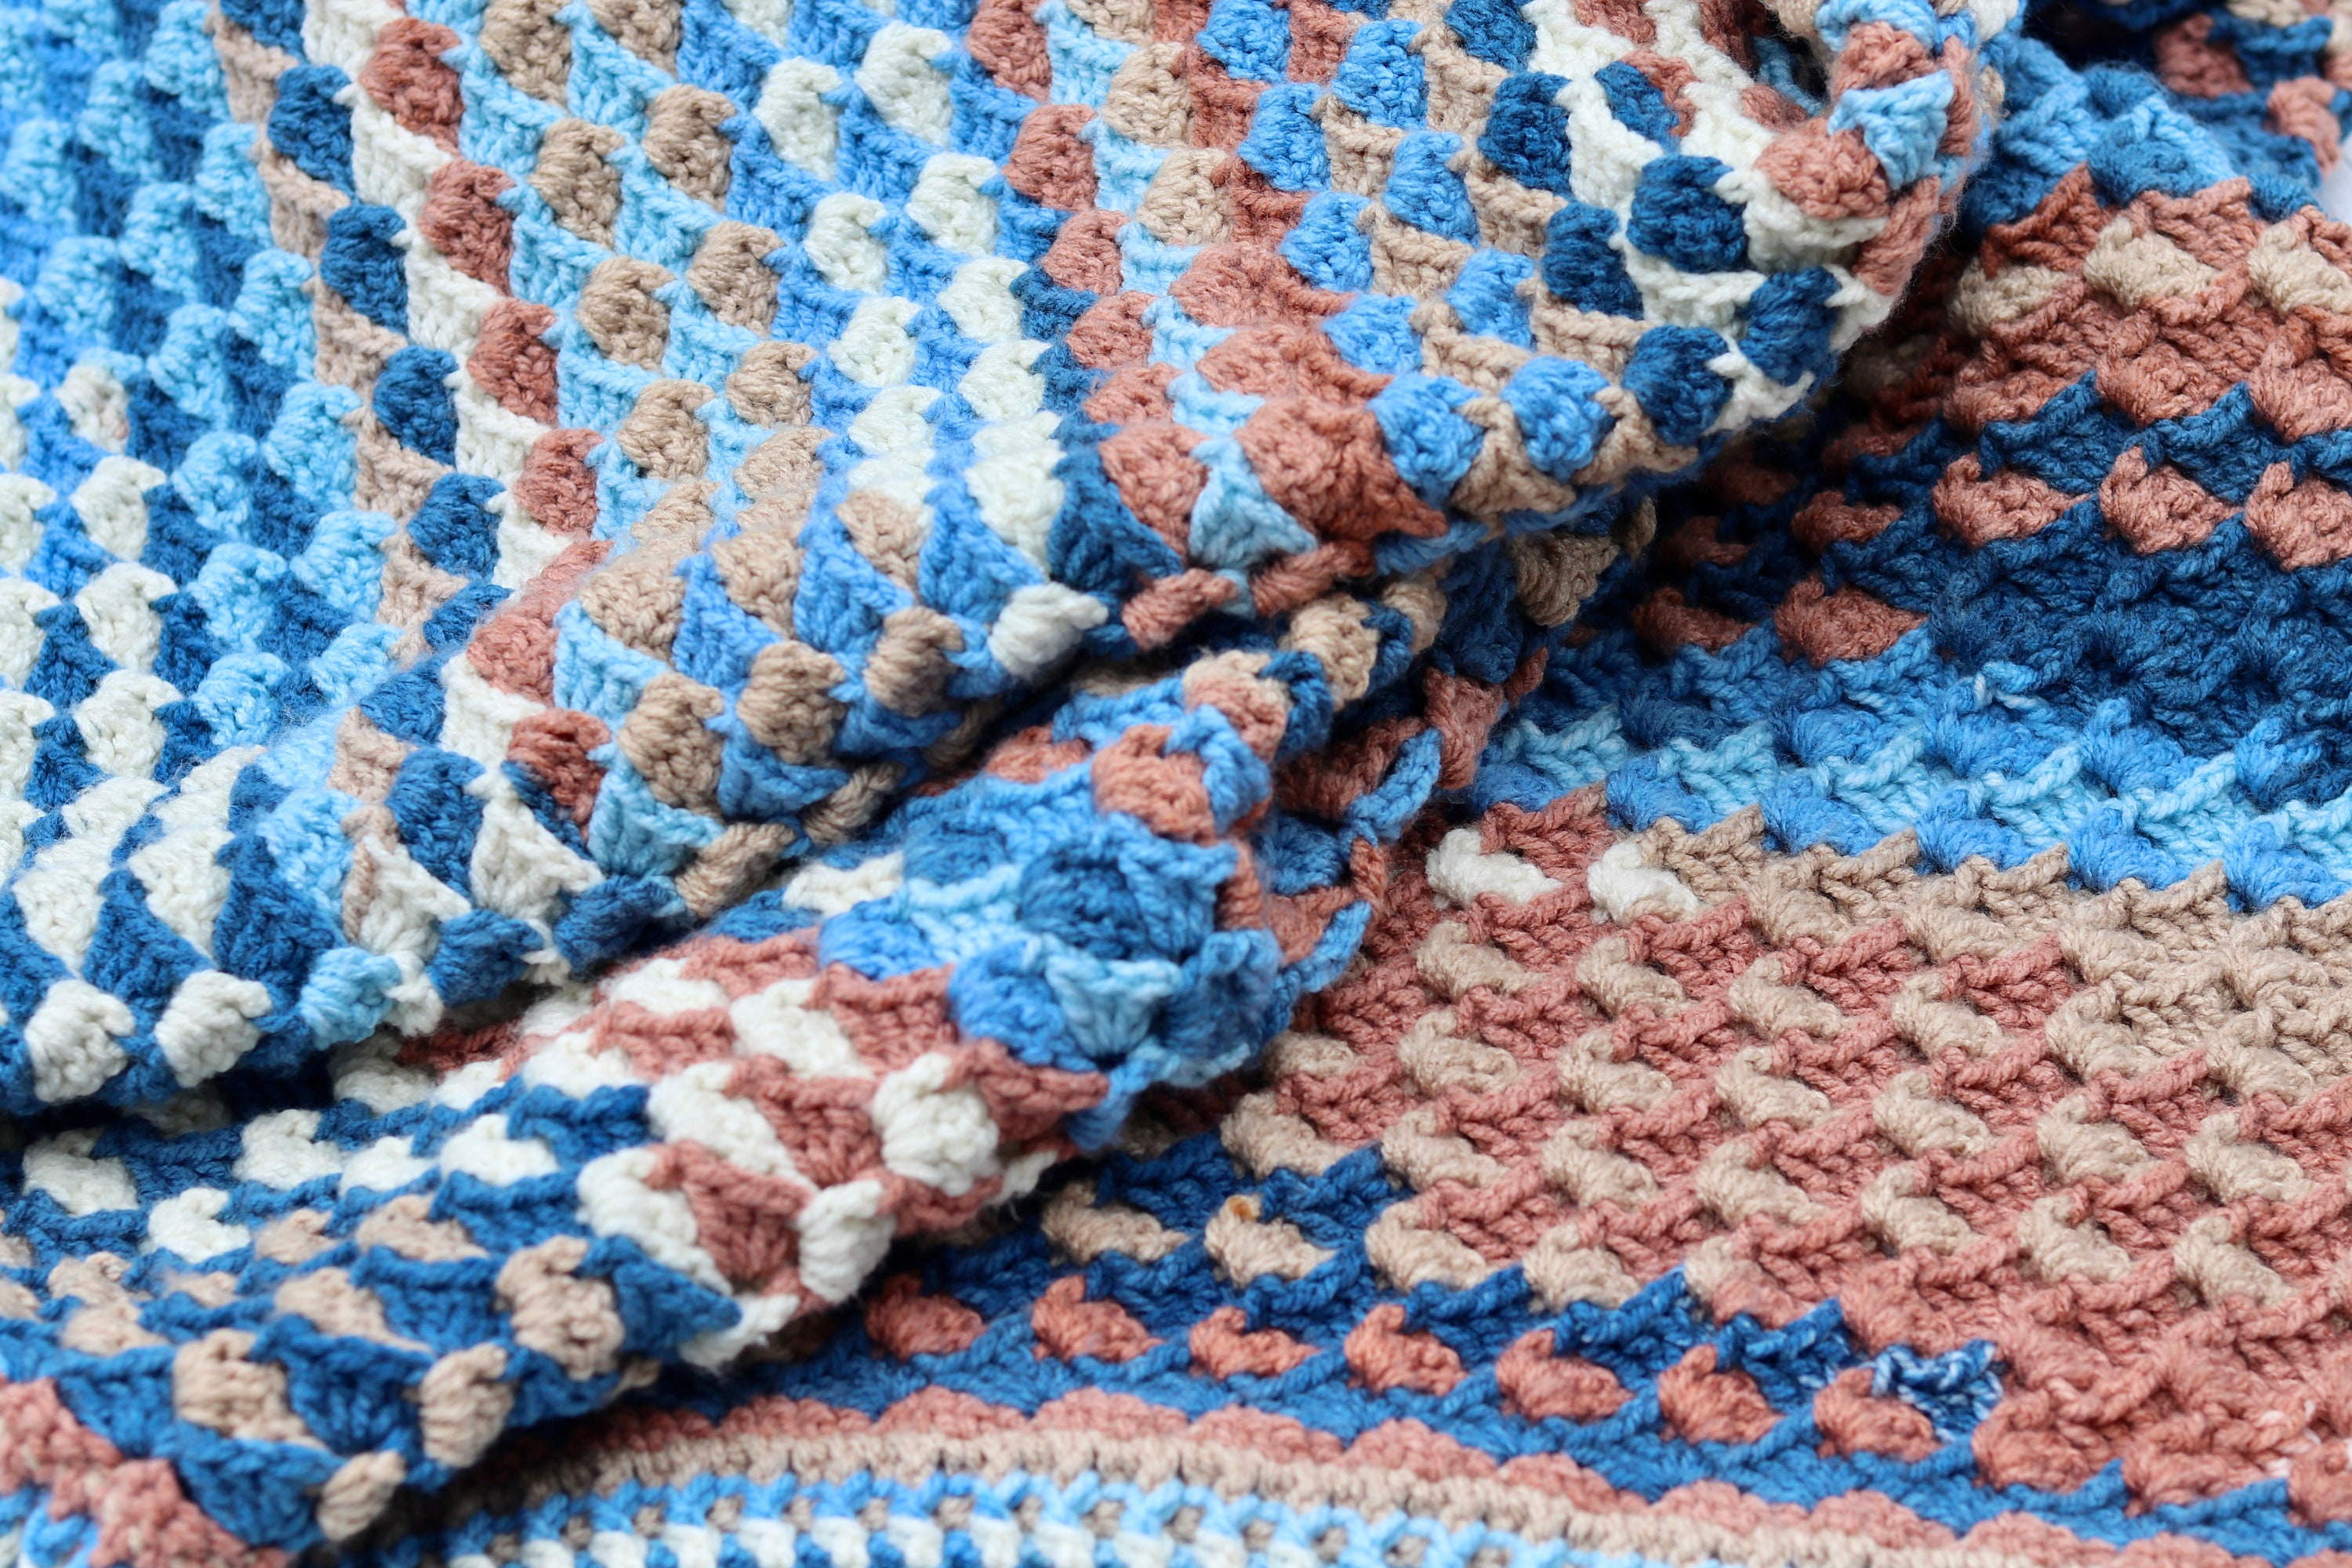 Boardwalk Blanket Crochet Pattern